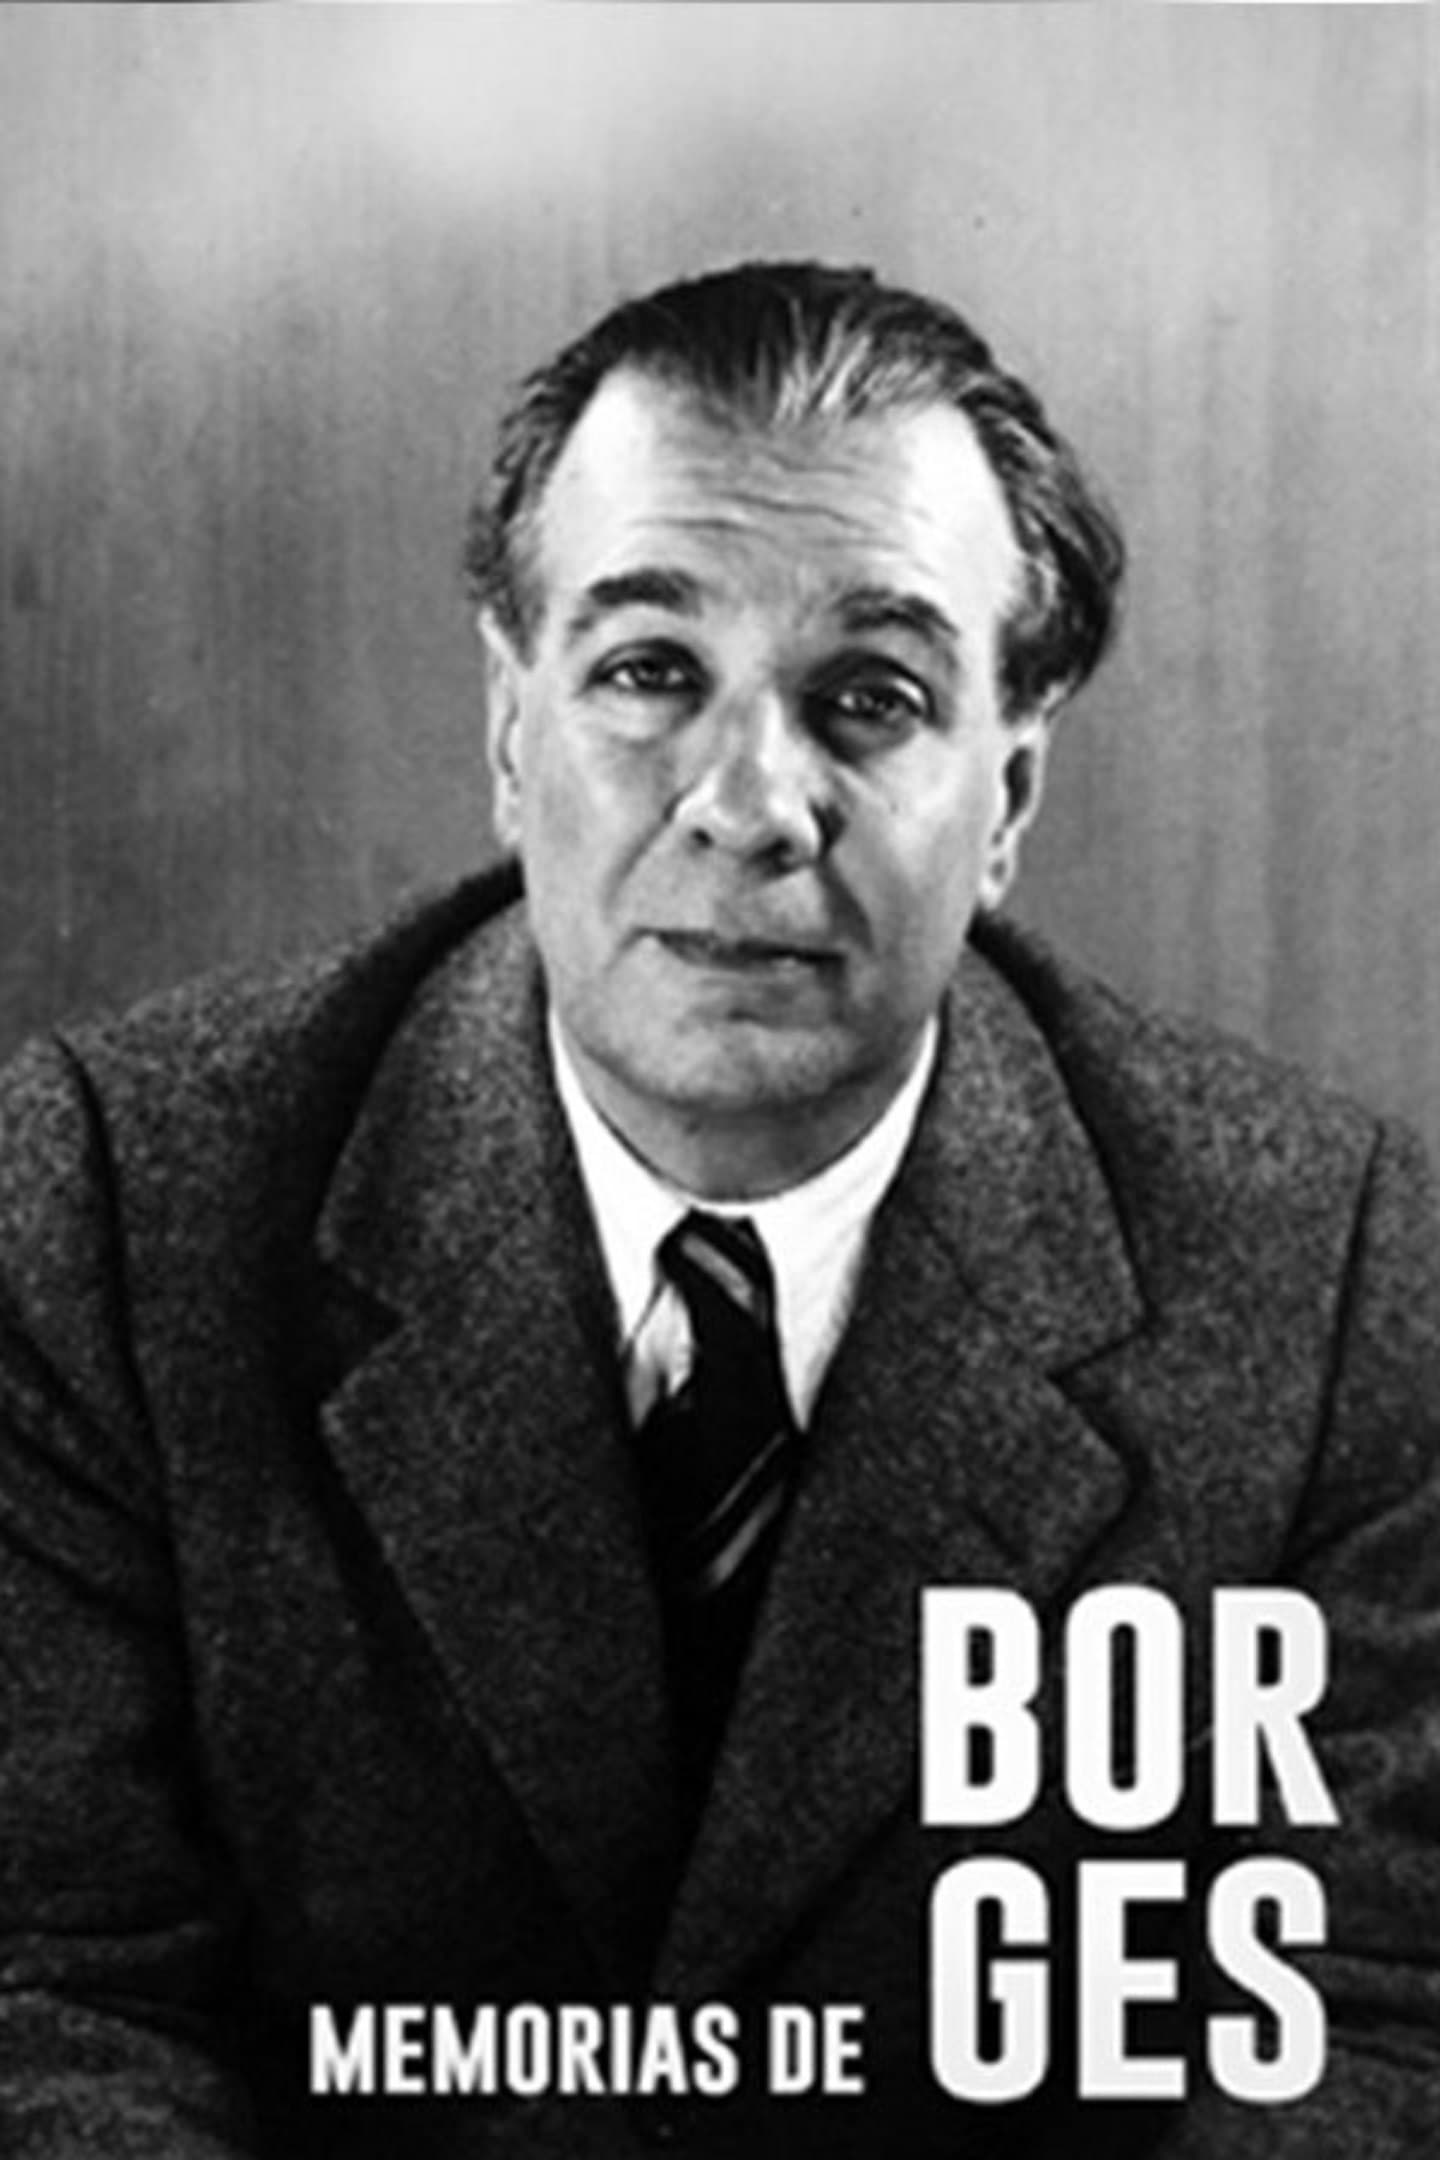 Memorias de Borges